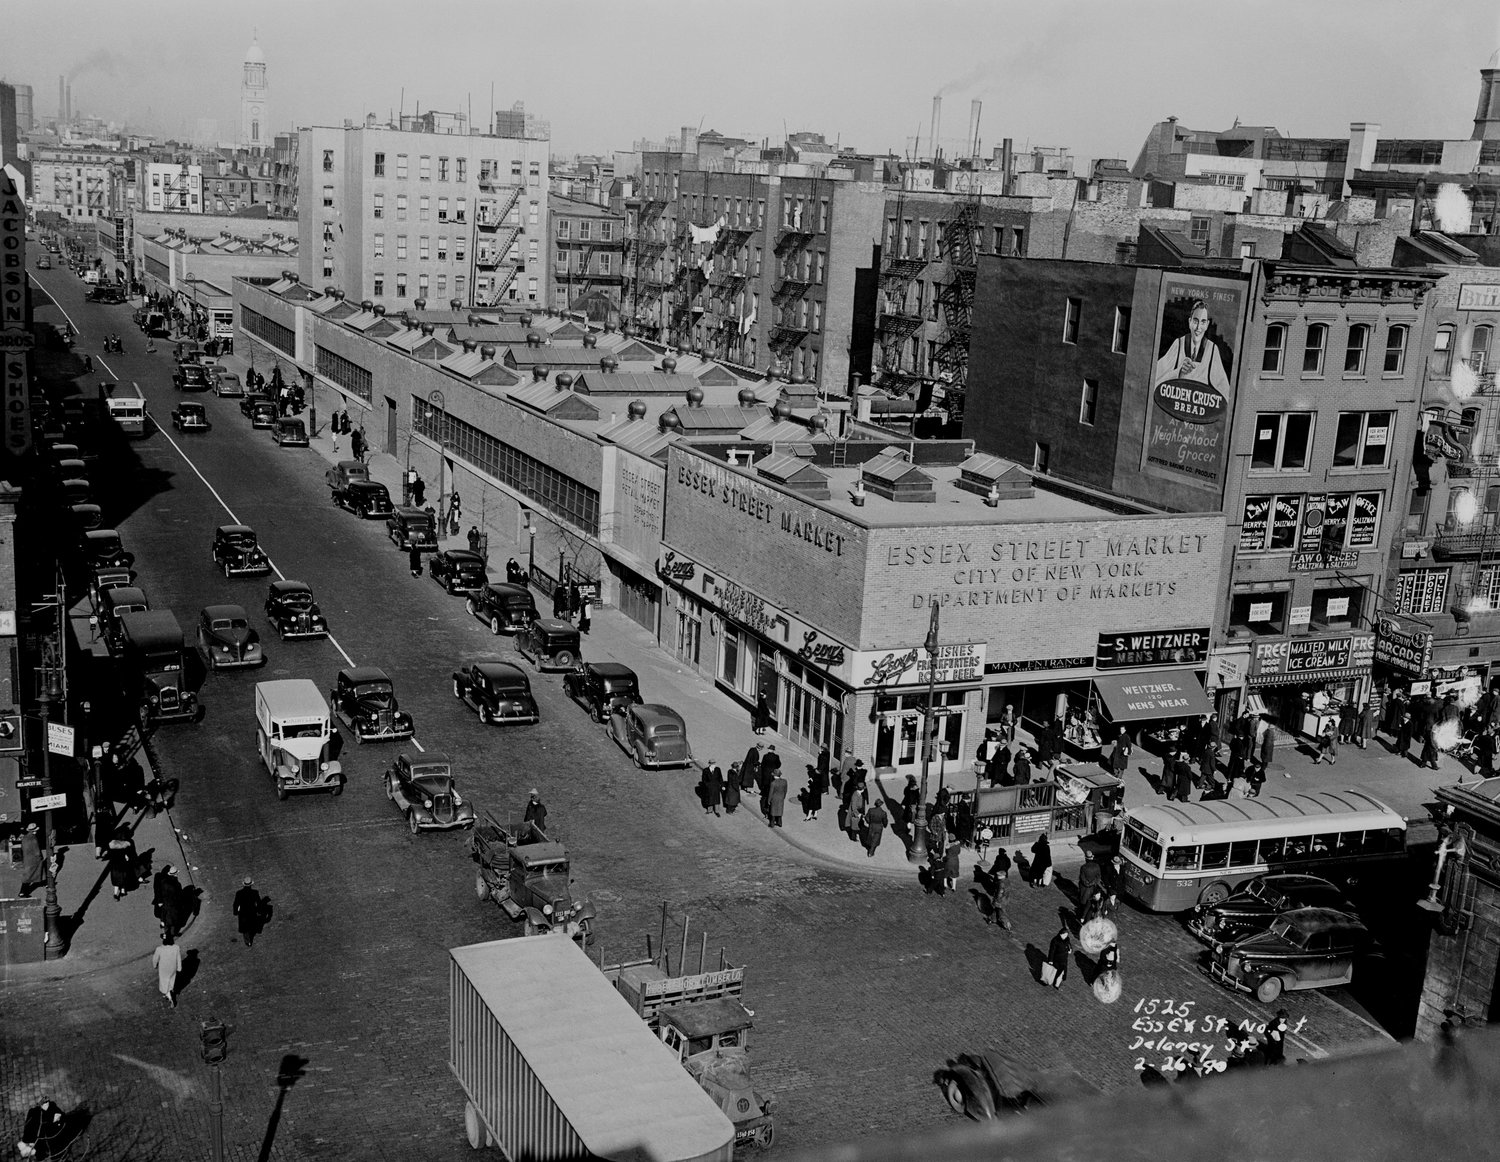 Essex Street Market 1940